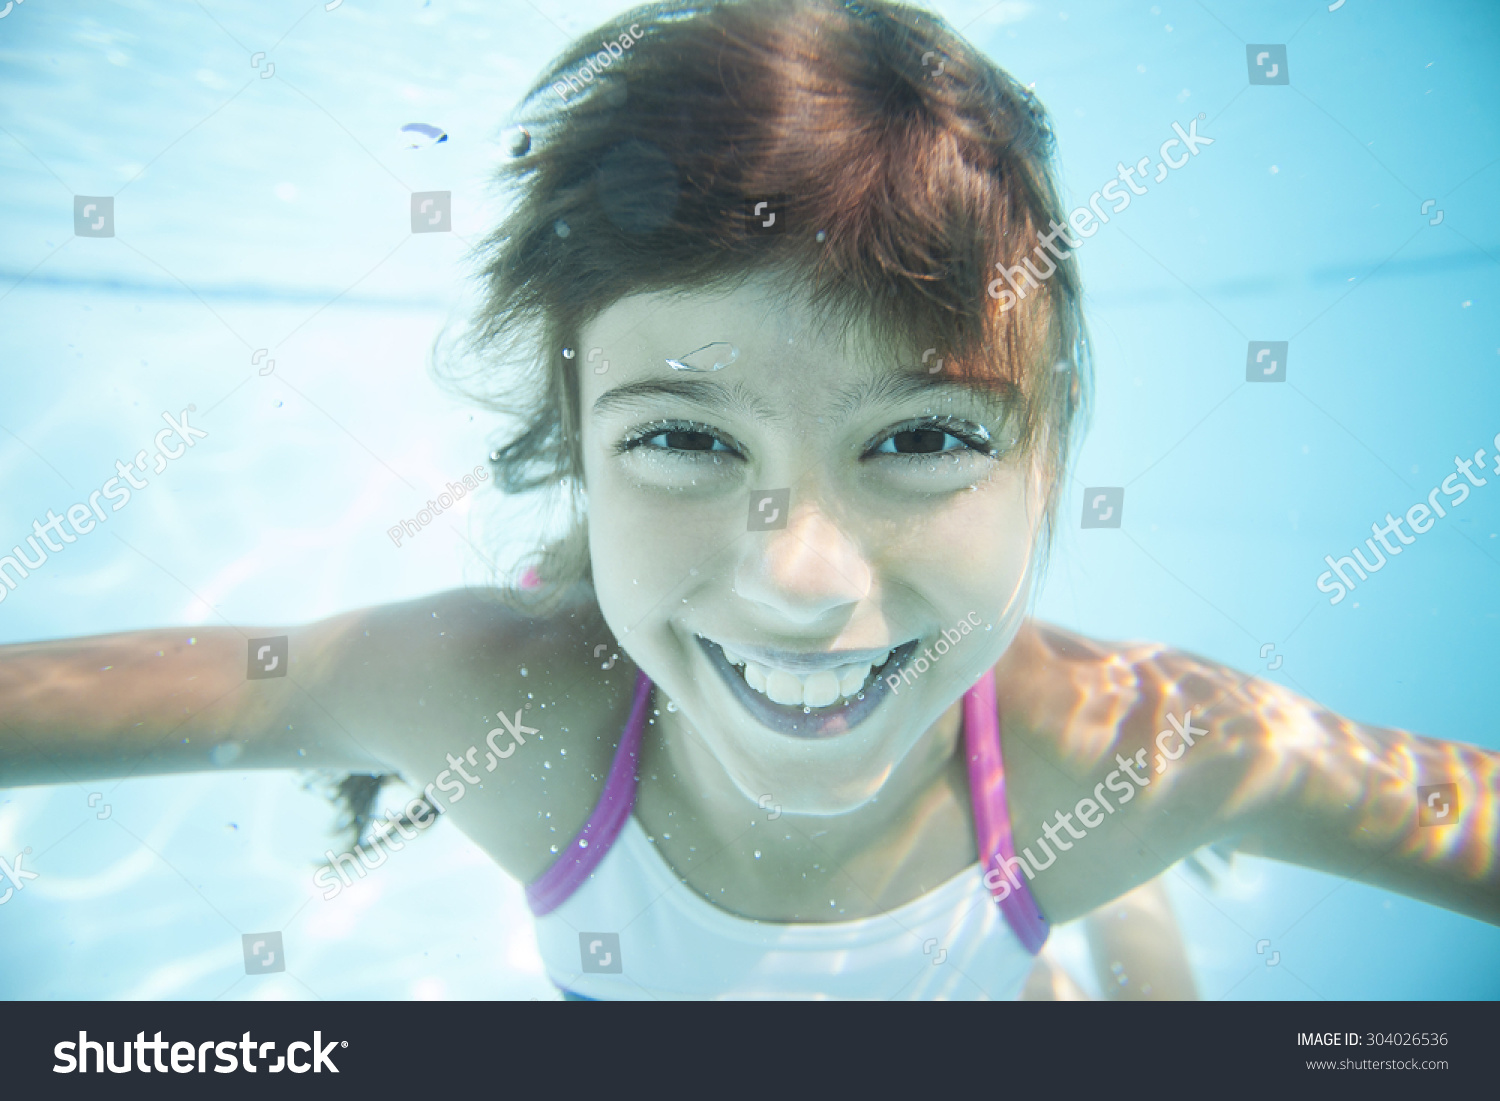 Joyful Girl Swimming Underwater Pool Stock Photo 304026536 | Shutterstock